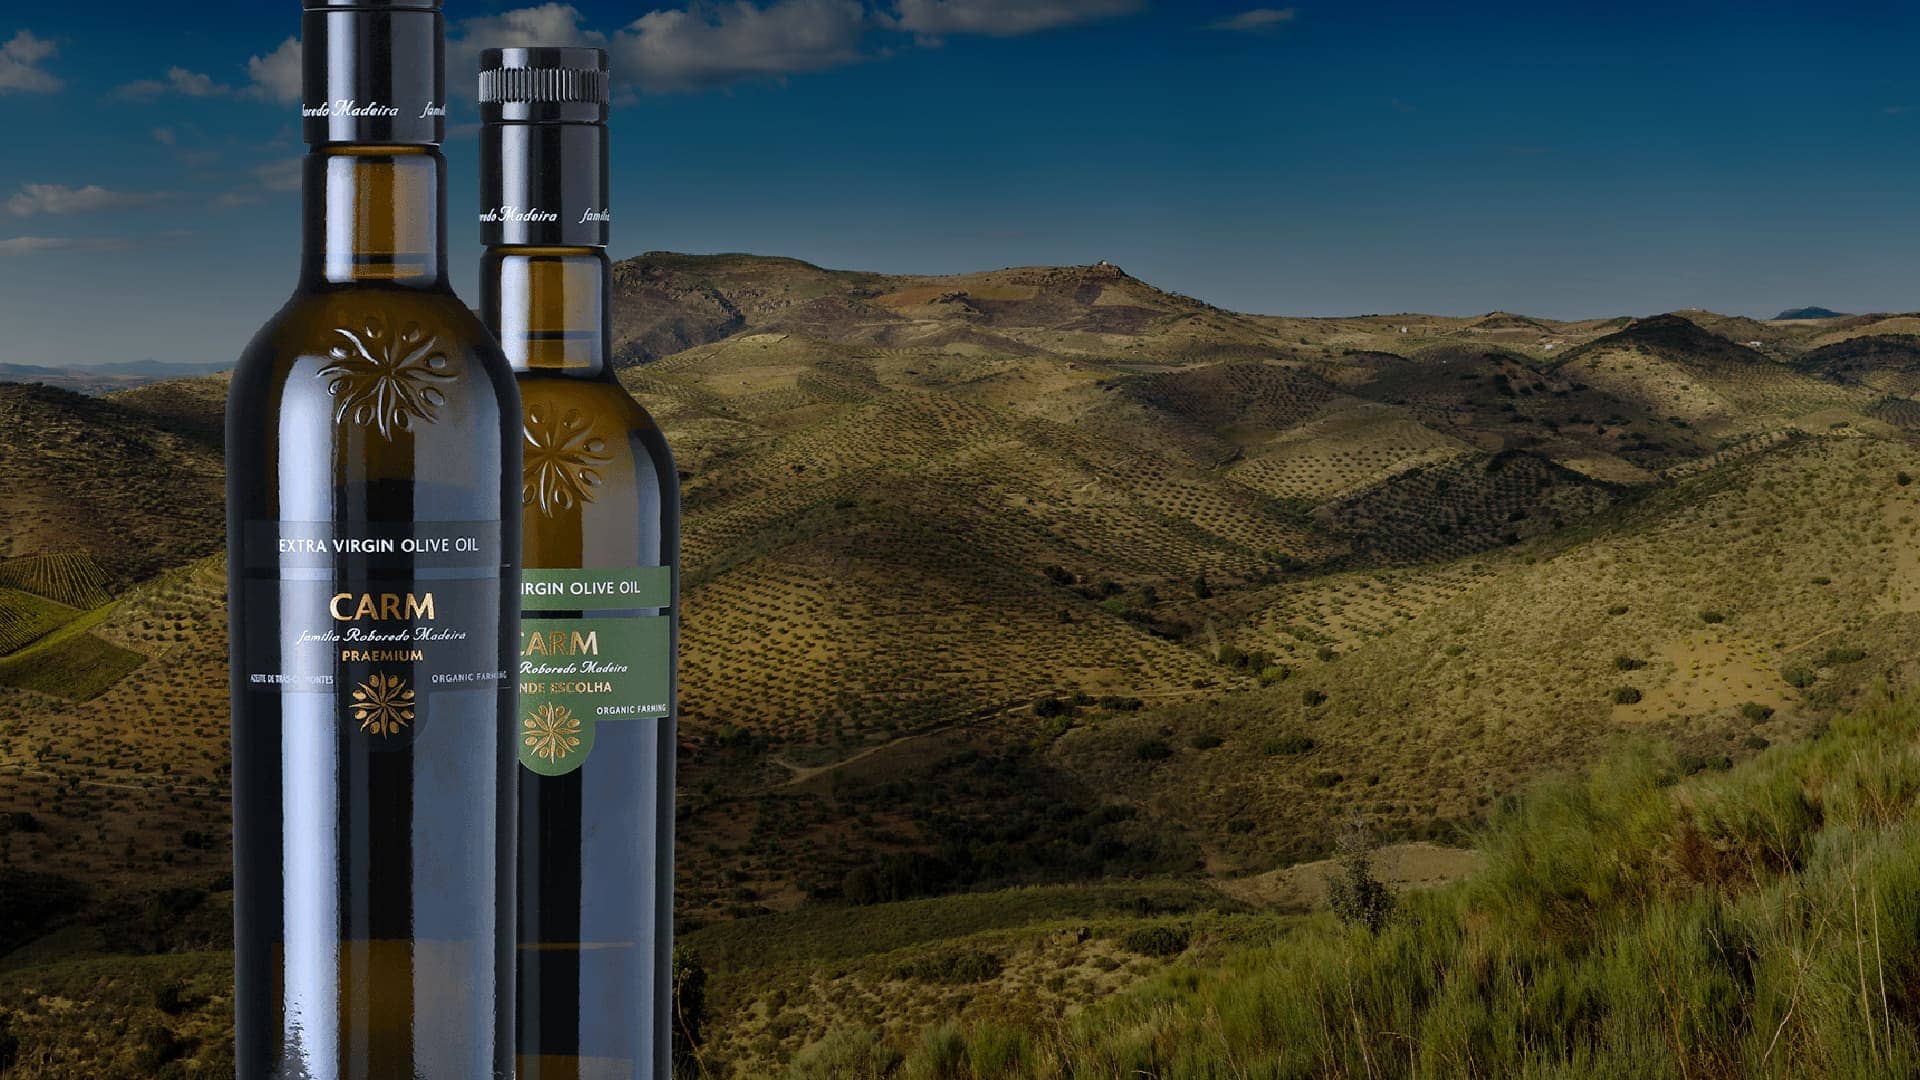 簡介-carm-用高端橄欖油和葡萄酒-橄欖油時代來慶祝區域風味